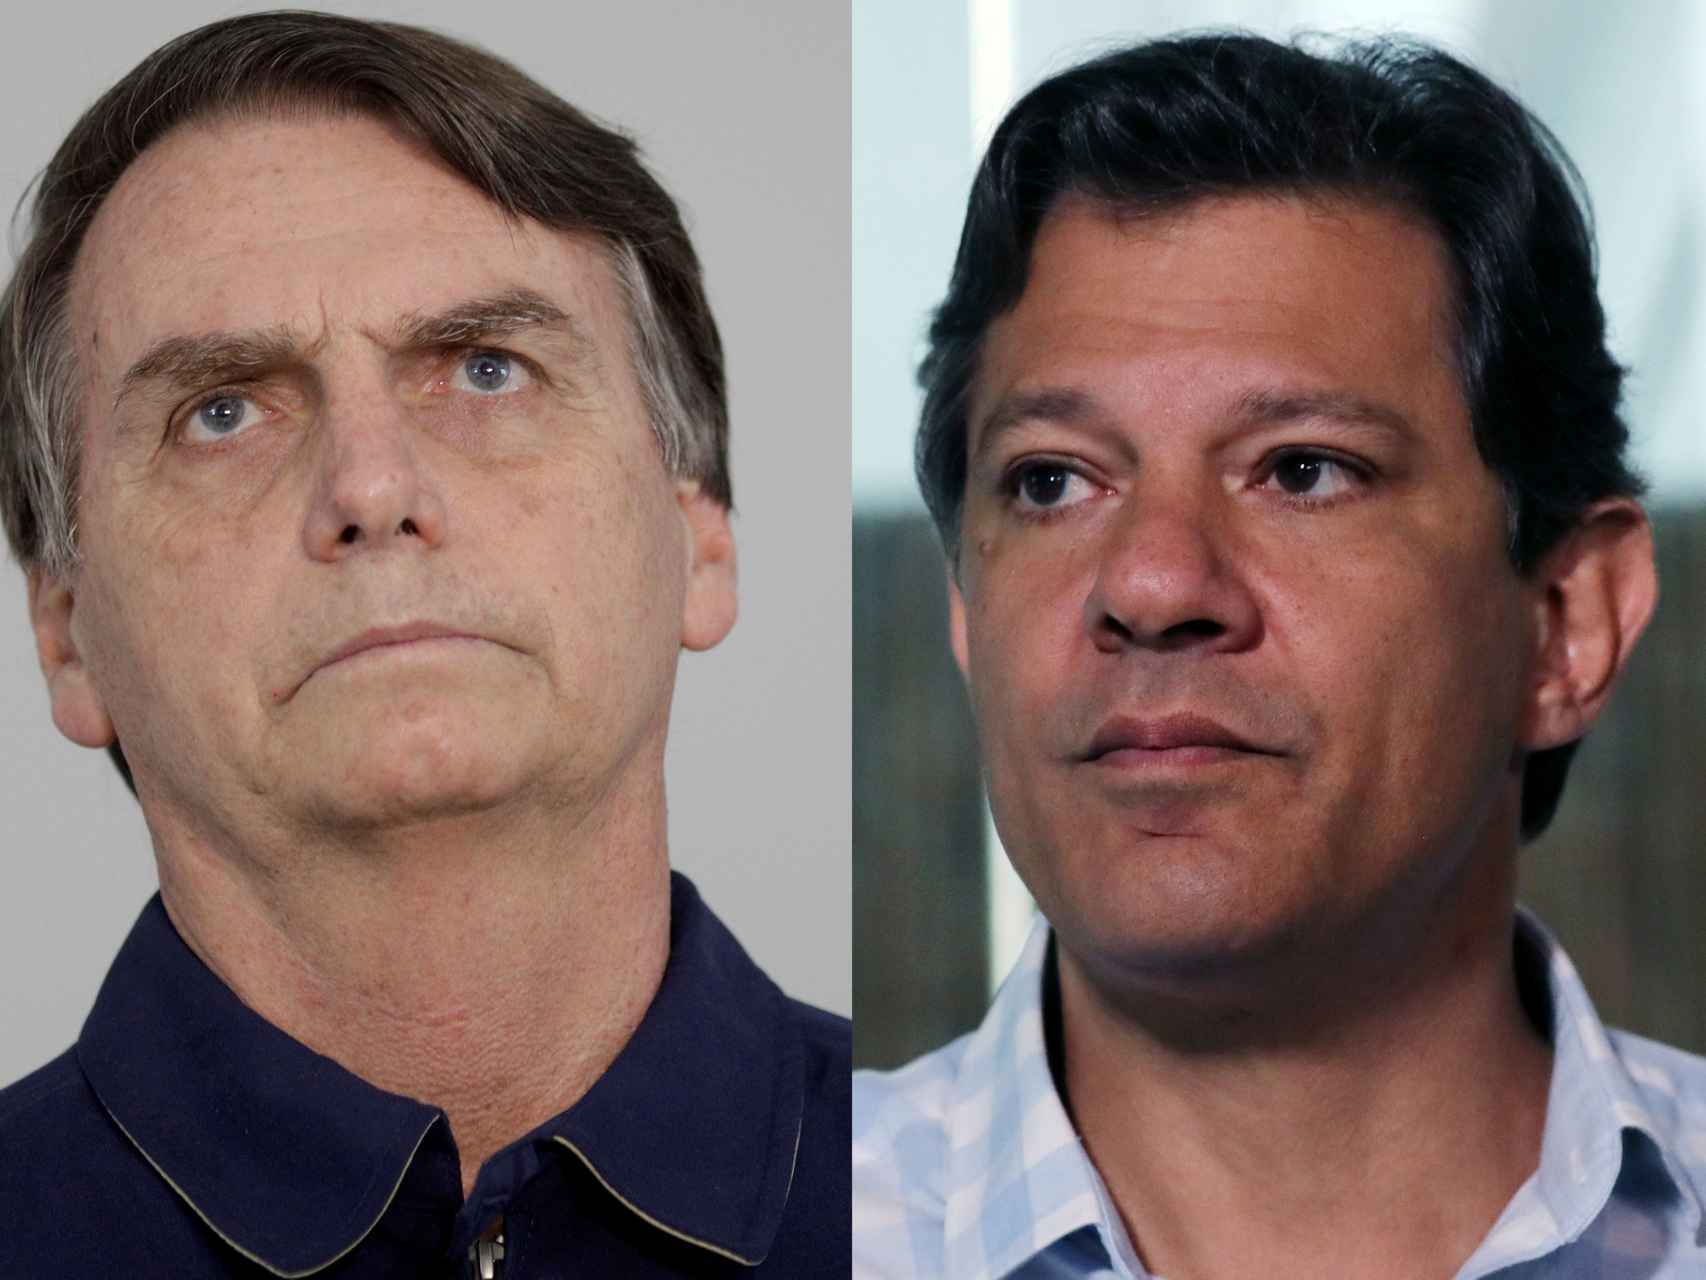 Jaír Bolsonaro y Fernando Haddad, uno de ellos será el próximo presidente de Brasil.